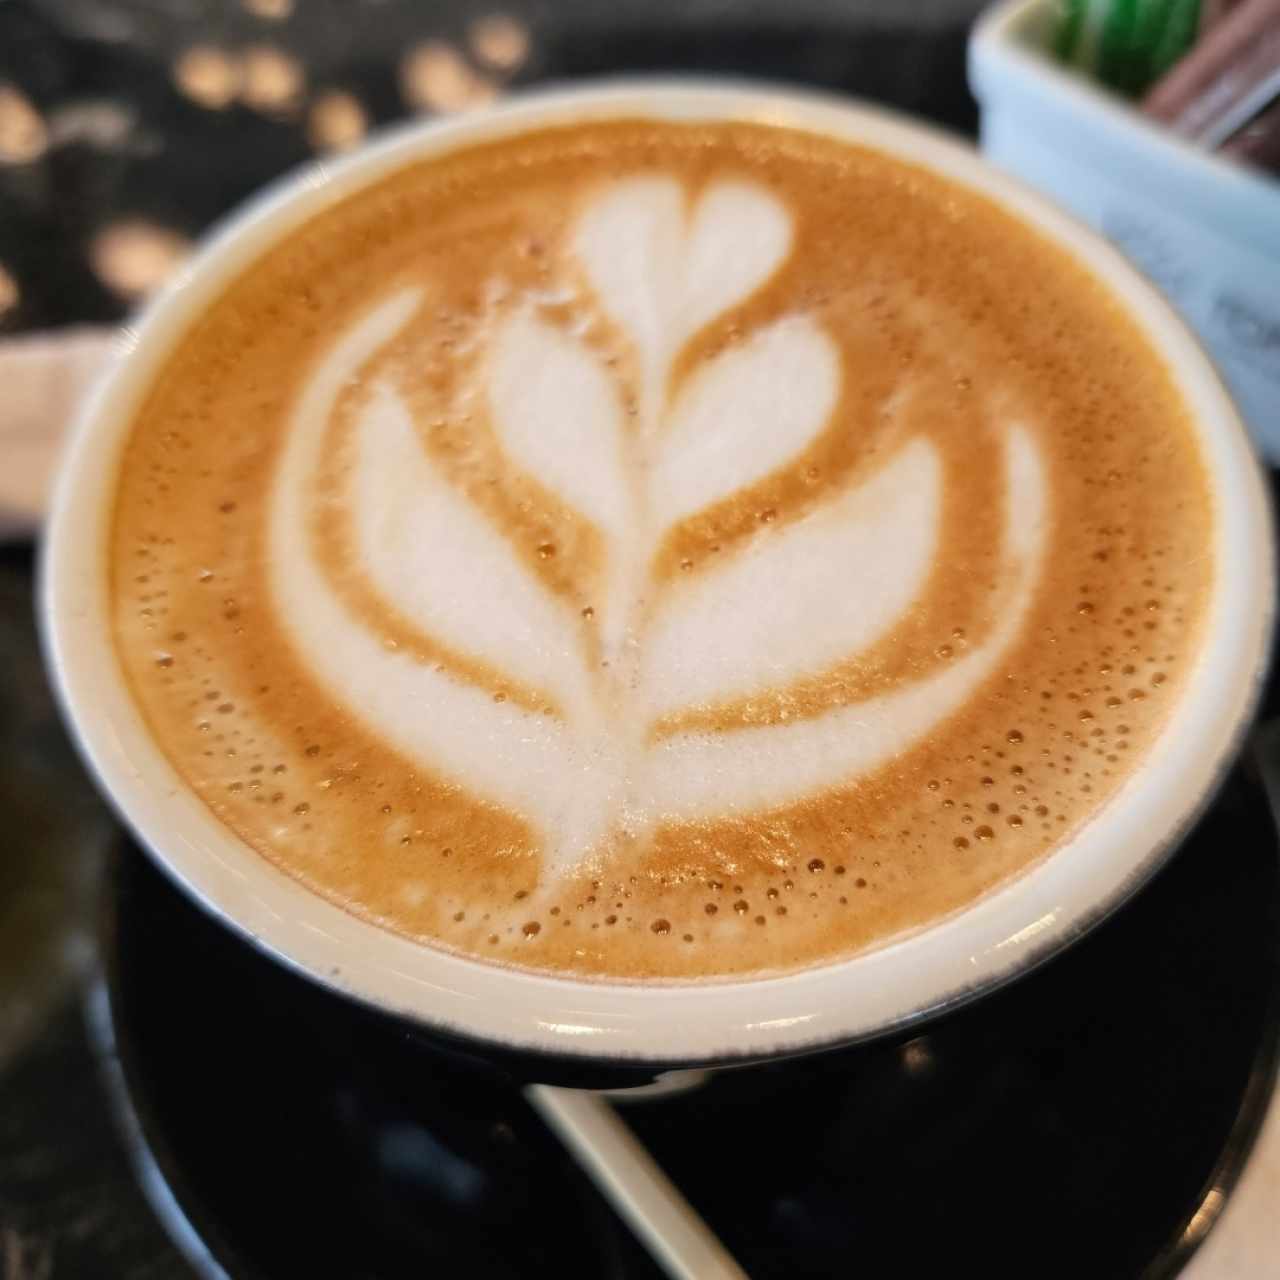 cafe latte